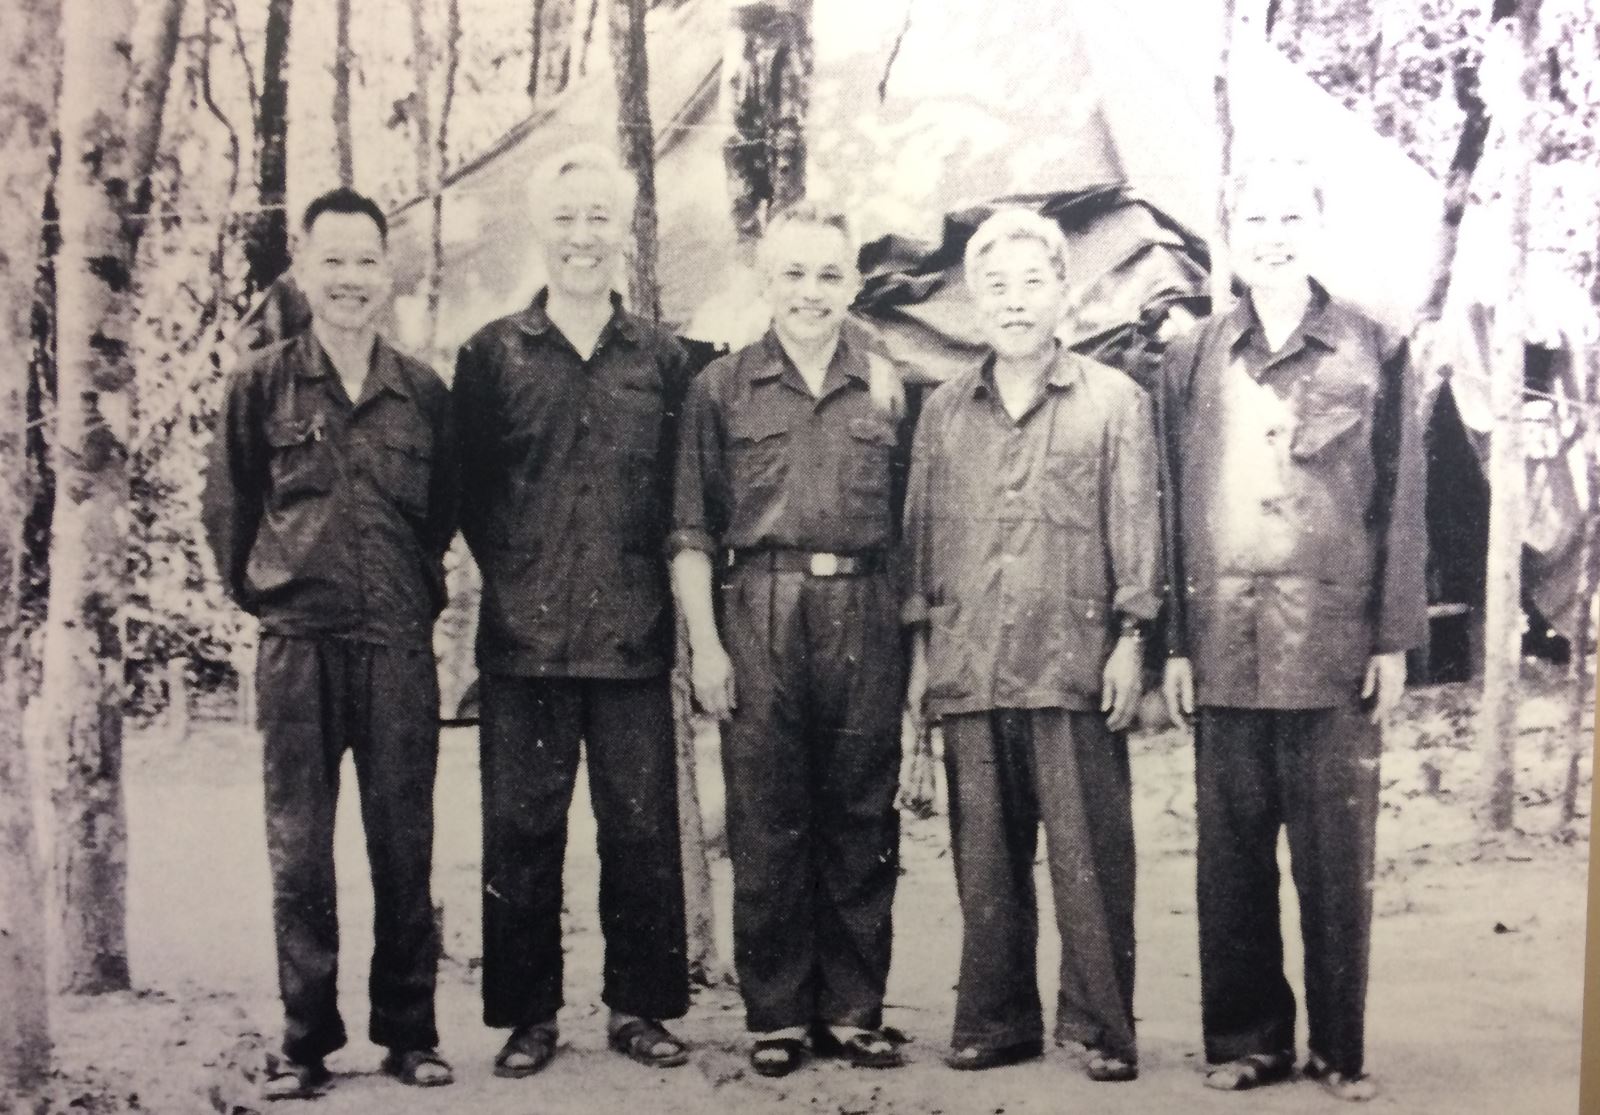 Bộ chỉ huy chiến dịch Hồ Chí Minh (Từ trái sang: Thượng tướng Trần Văn Trà, Lê Đức Thọ, Đại tướng Văn Tiến Dũng, Trung tướng Đinh Đức Thiện, Phạm Hùng)